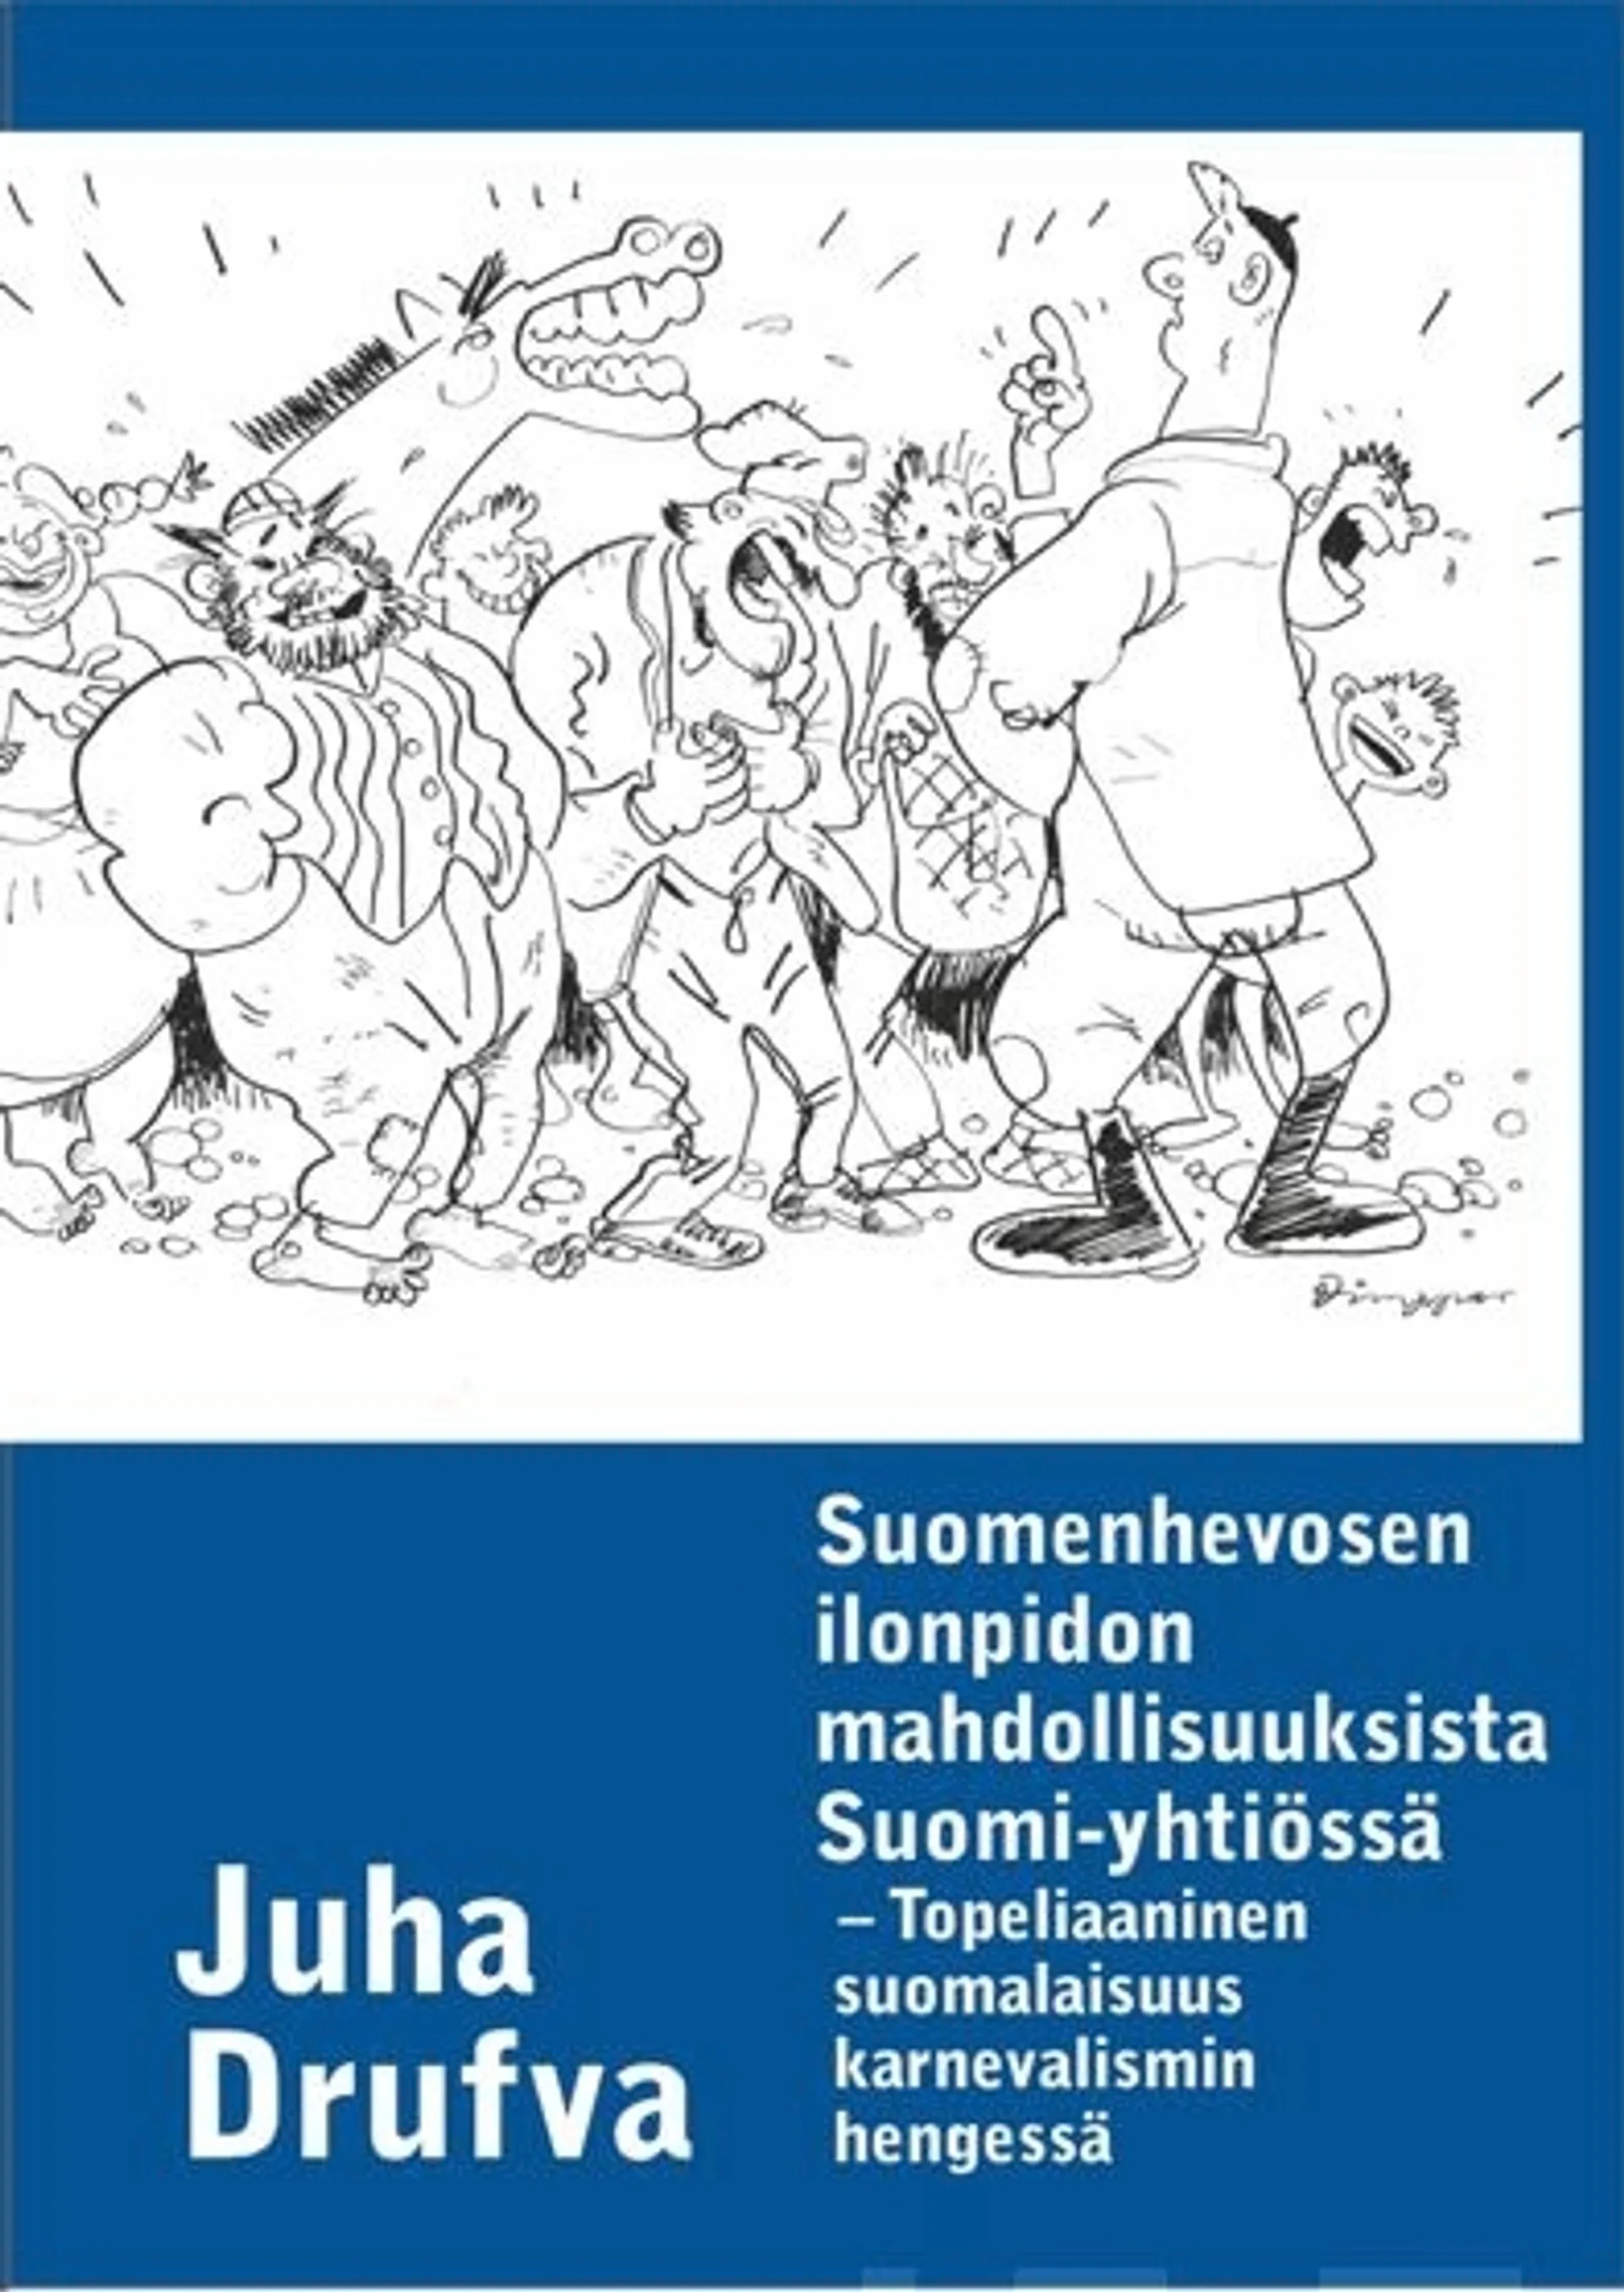 Drufva, Suomenhevosen ilonpidon mahdollisuuksista Suomi-yhtiössä